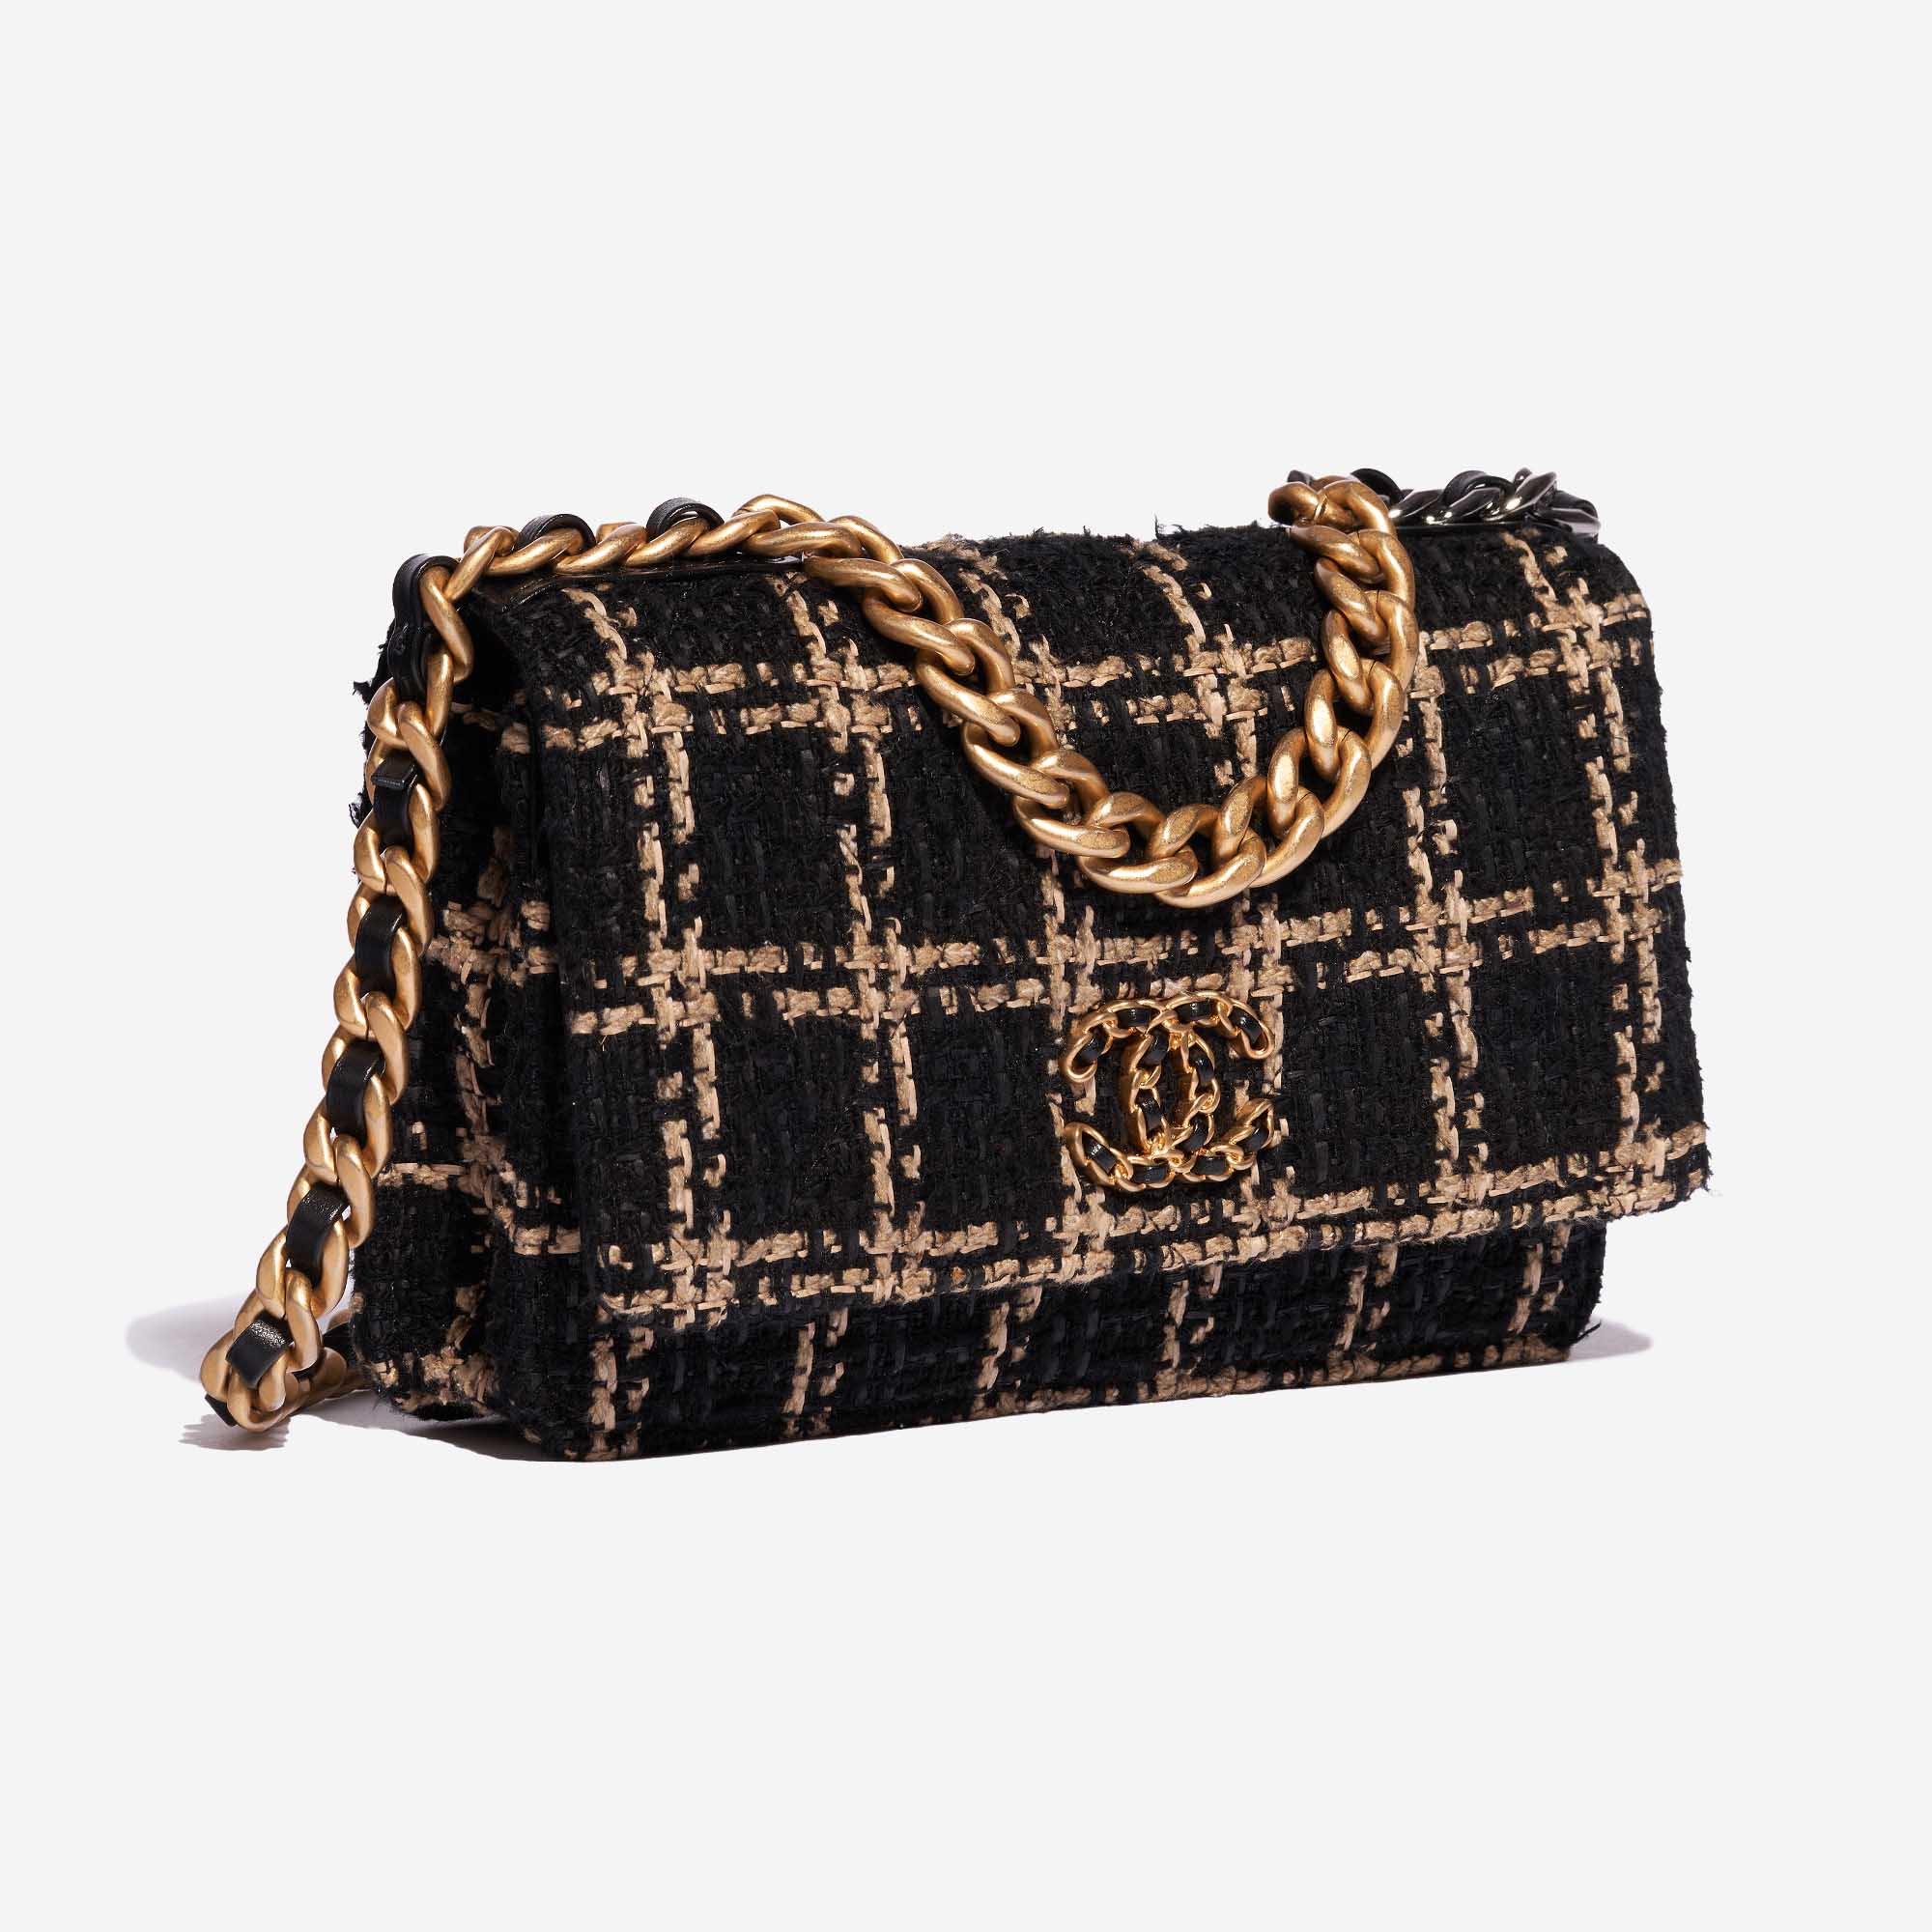 Pre-owned Chanel bag 19 WOC Tweed Black / Beige Beige, Black Side Front | Sell your designer bag on Saclab.com